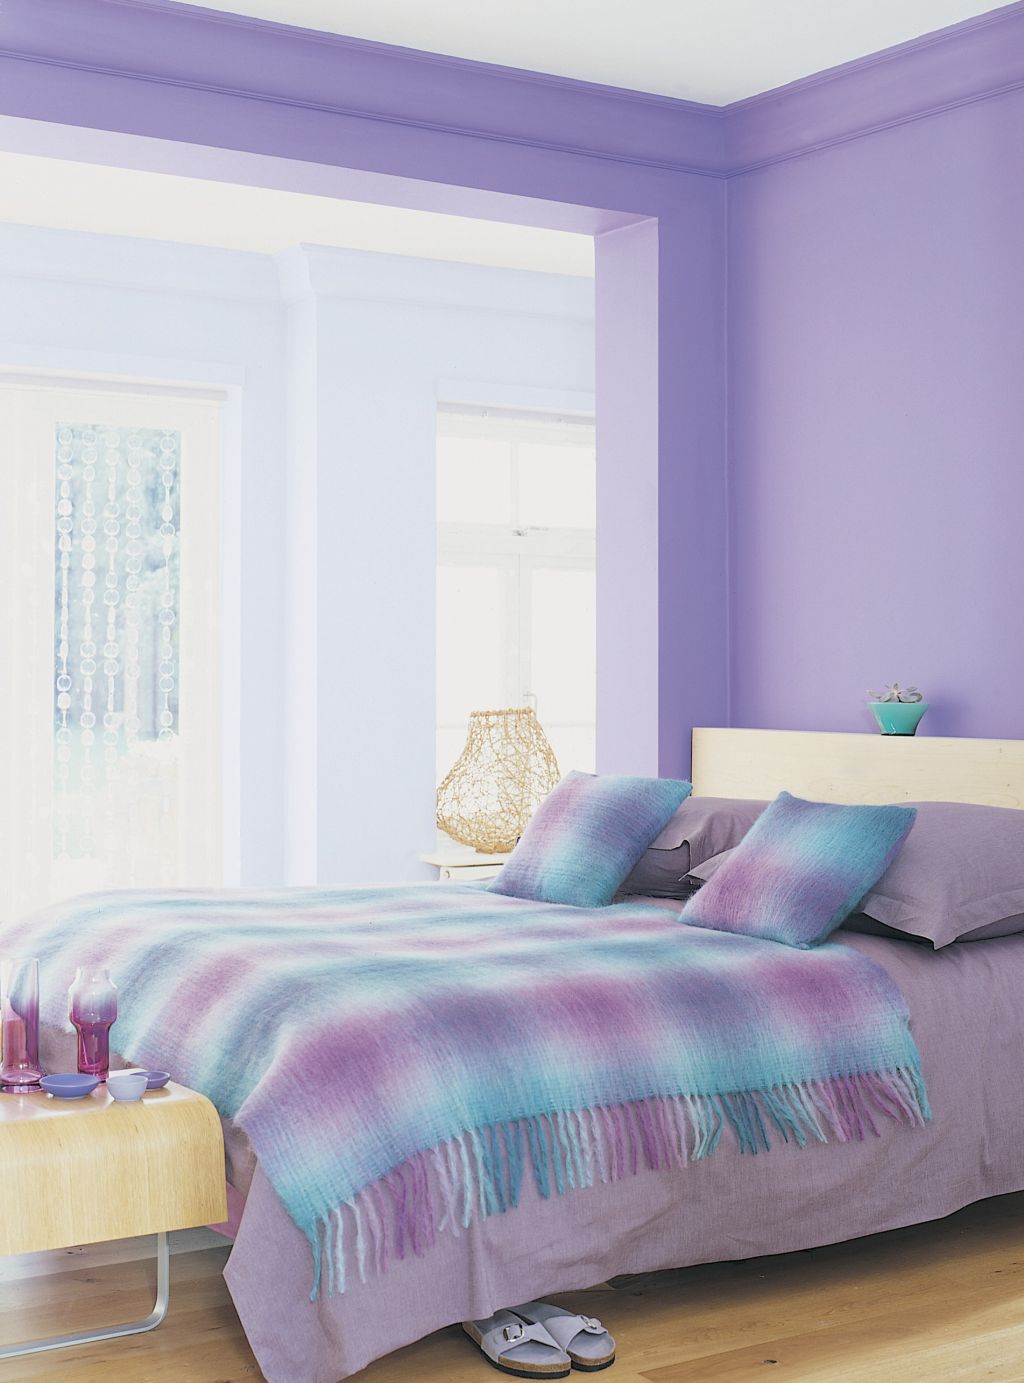 Tonuri de mov pastelat in dormitor Foto Copyright © Akzo Nobel